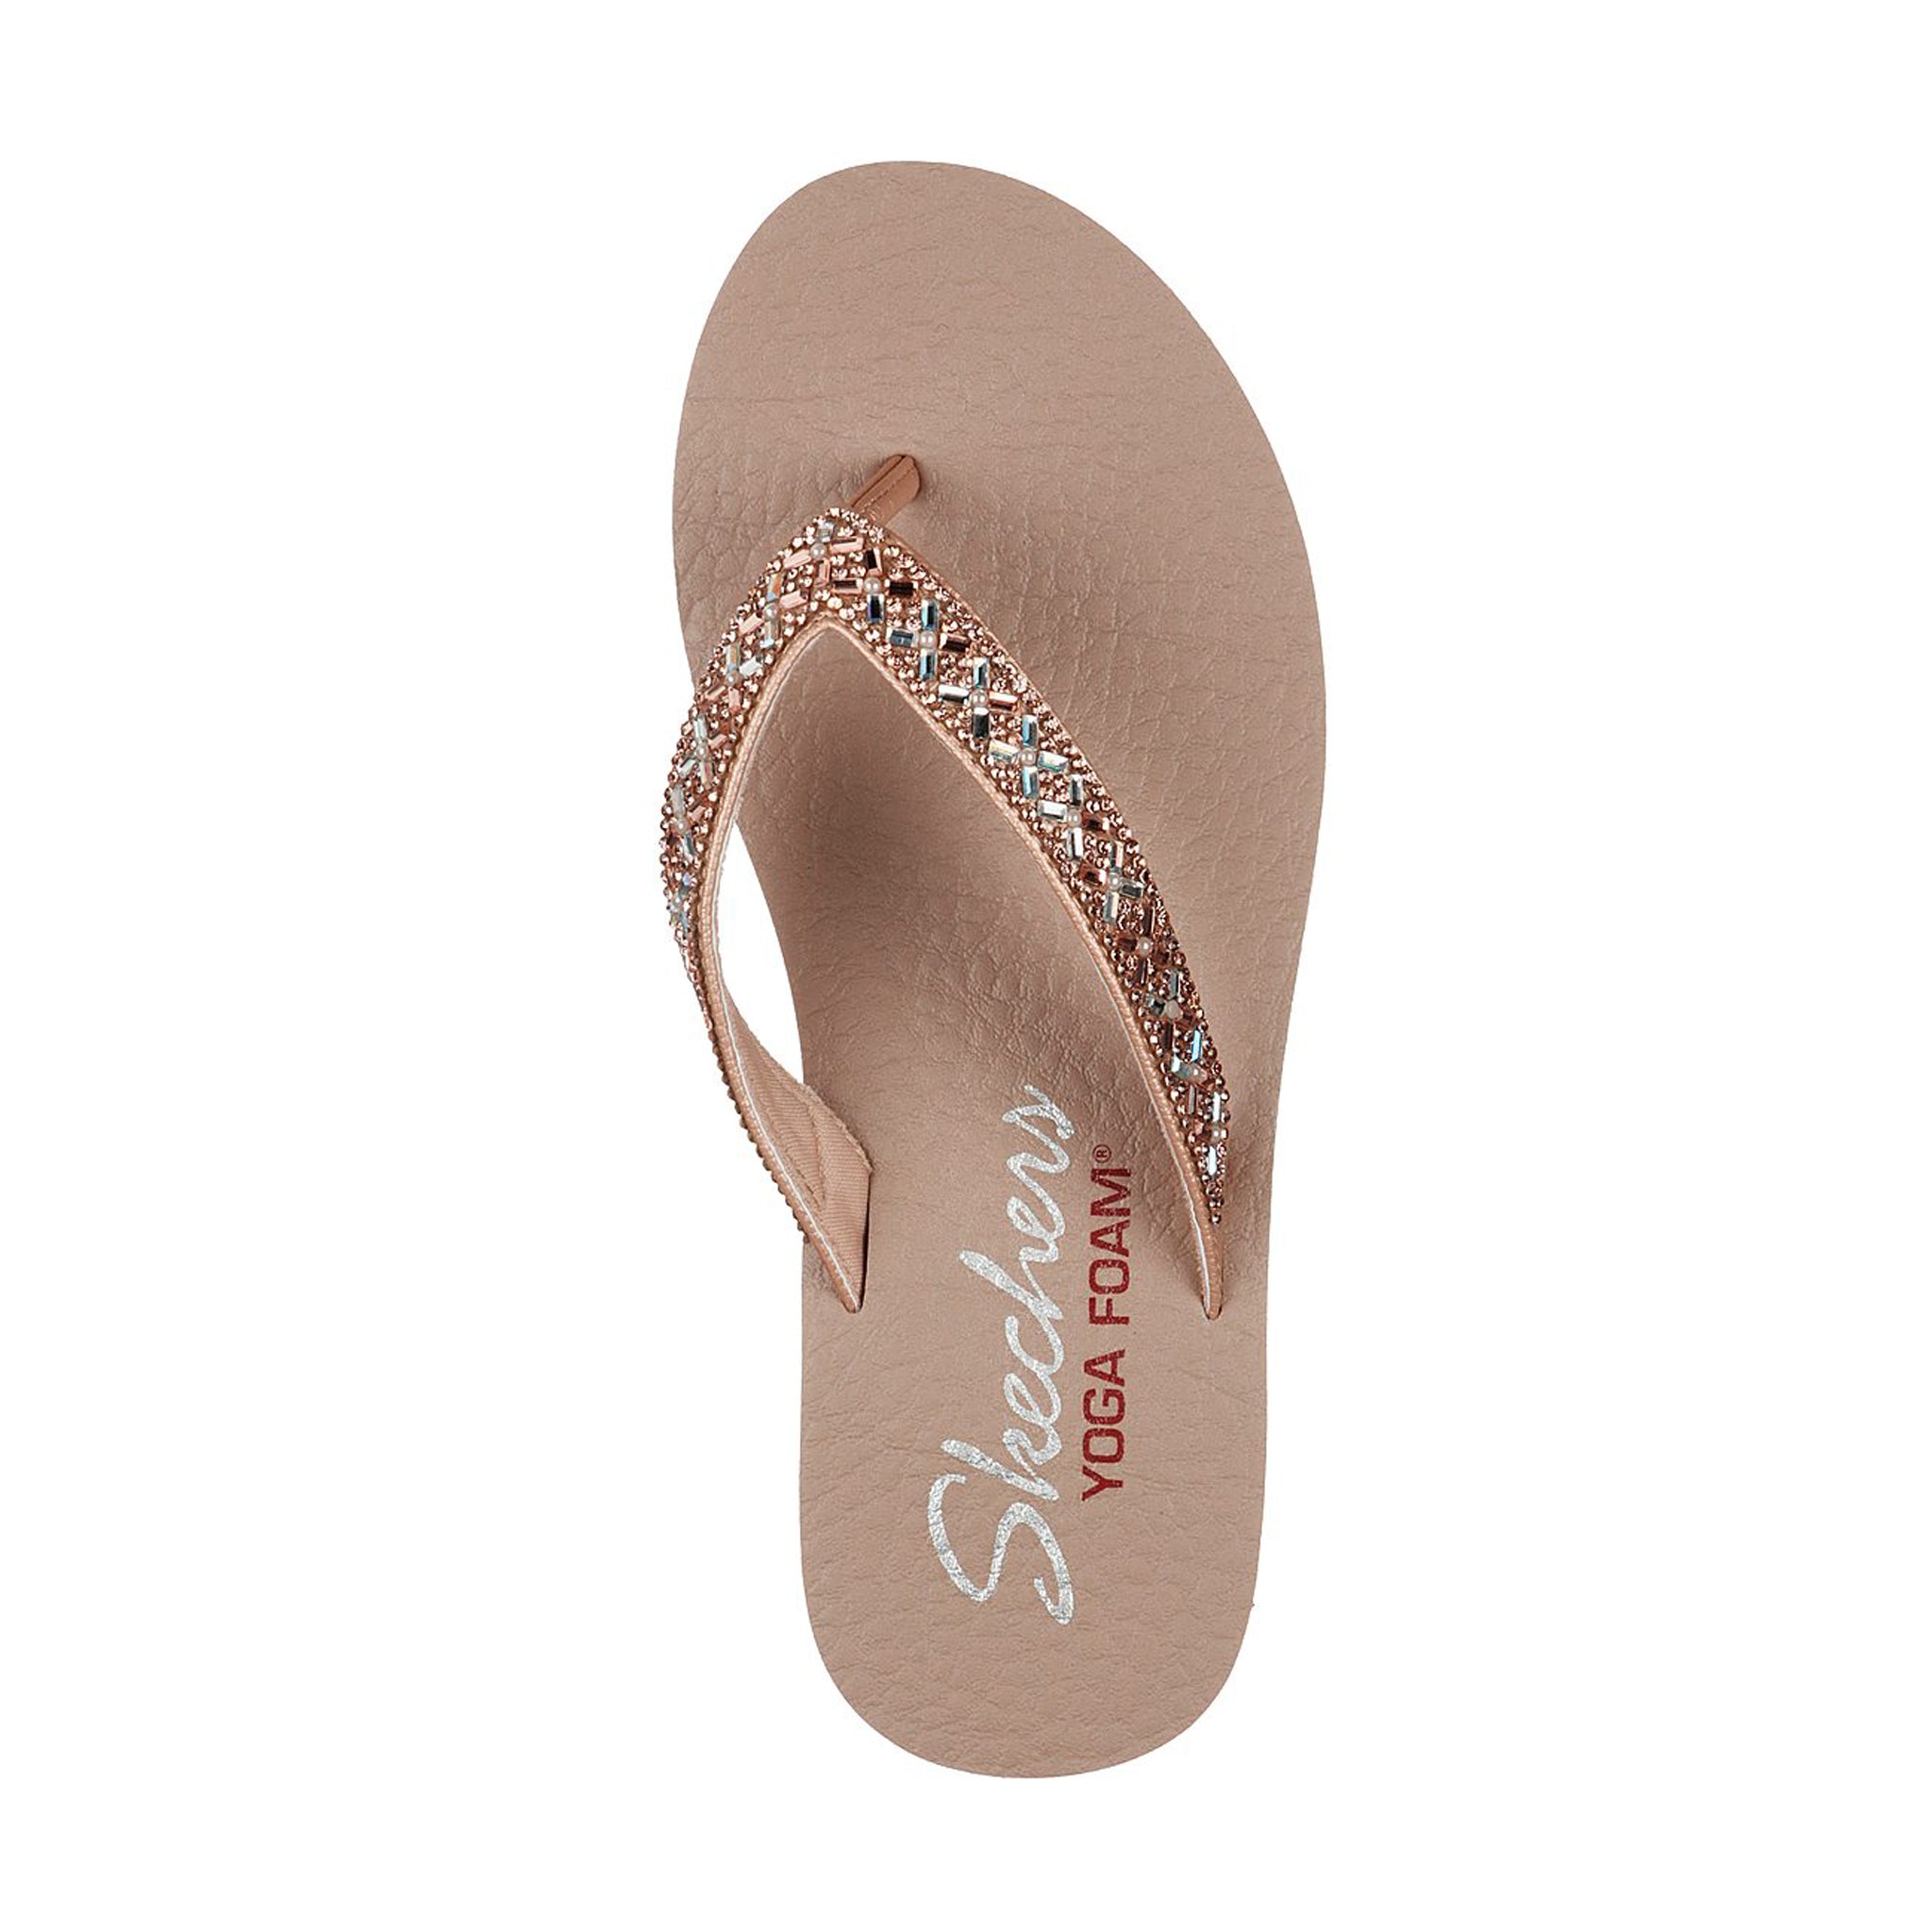 Skechers Women's Meditation Rock Crown Yoga Foam Sandals Shoes